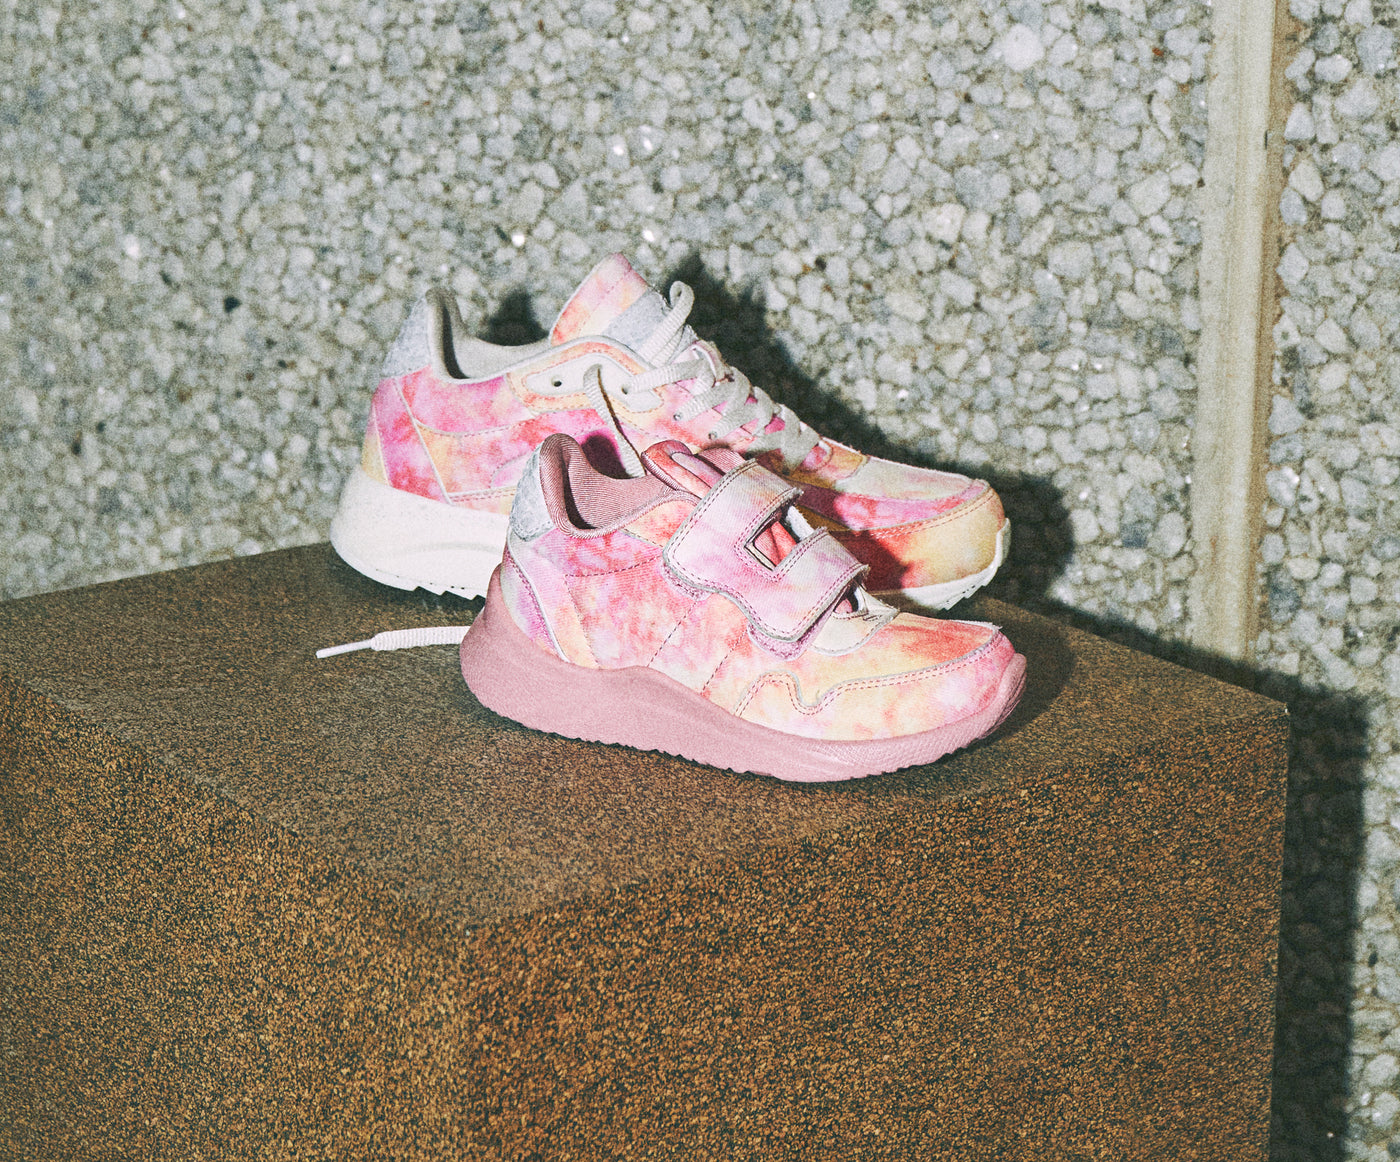 WODEN KIDS Frej Splash Sneakers 761 Soft Pink